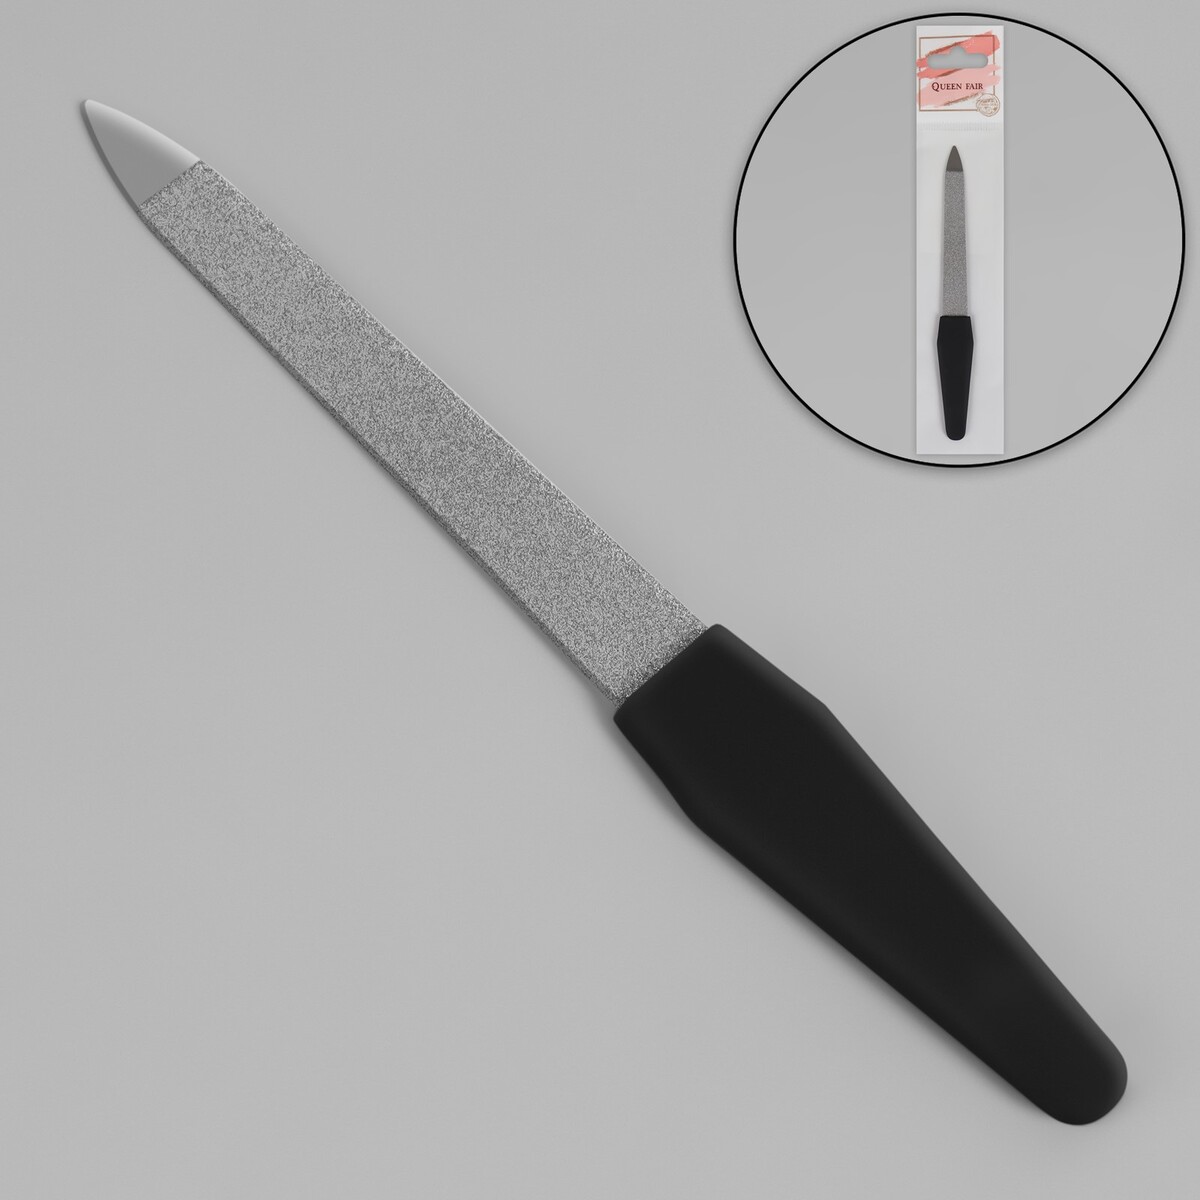 Пилка металлическая для ногтей, прорезиненная ручка, 12 см, цвет серебристый/черный пилка сапфировая для ногтей 13 см zwilling twinox